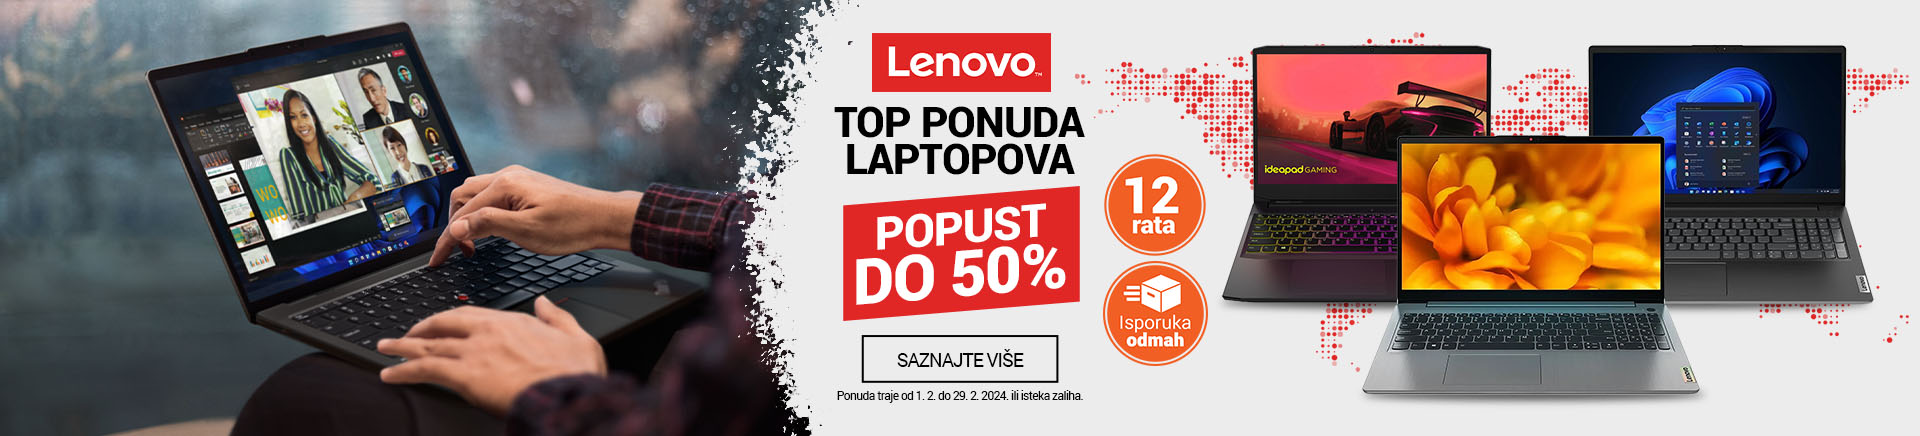 RS Lenovo TOP PONUDA laptopova 50posto MOBILE 380 X 436.jpg